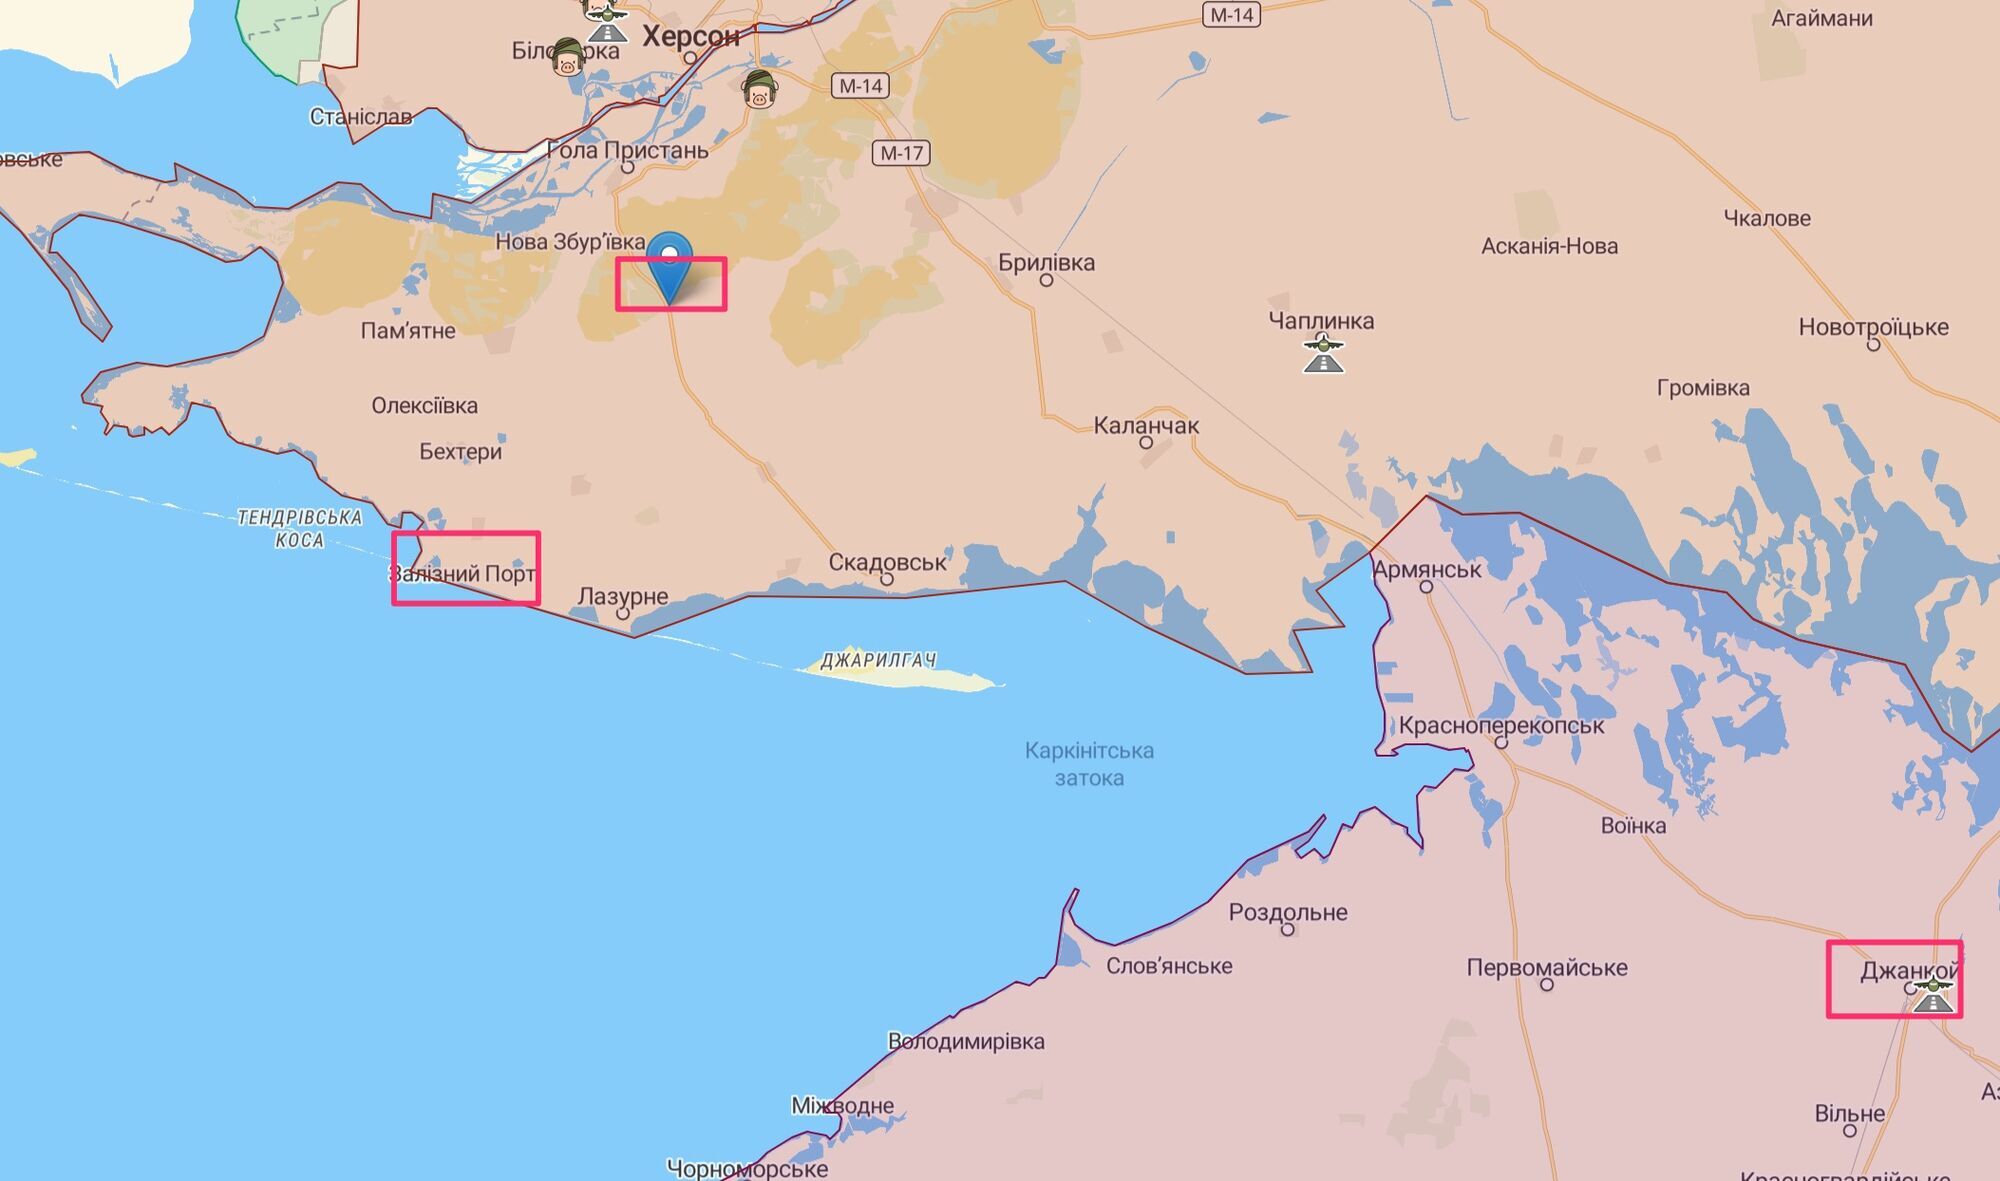 Іранських інструкторів помітили щонайменше у трьох ''центрах'' на окупованих територіях півдня України